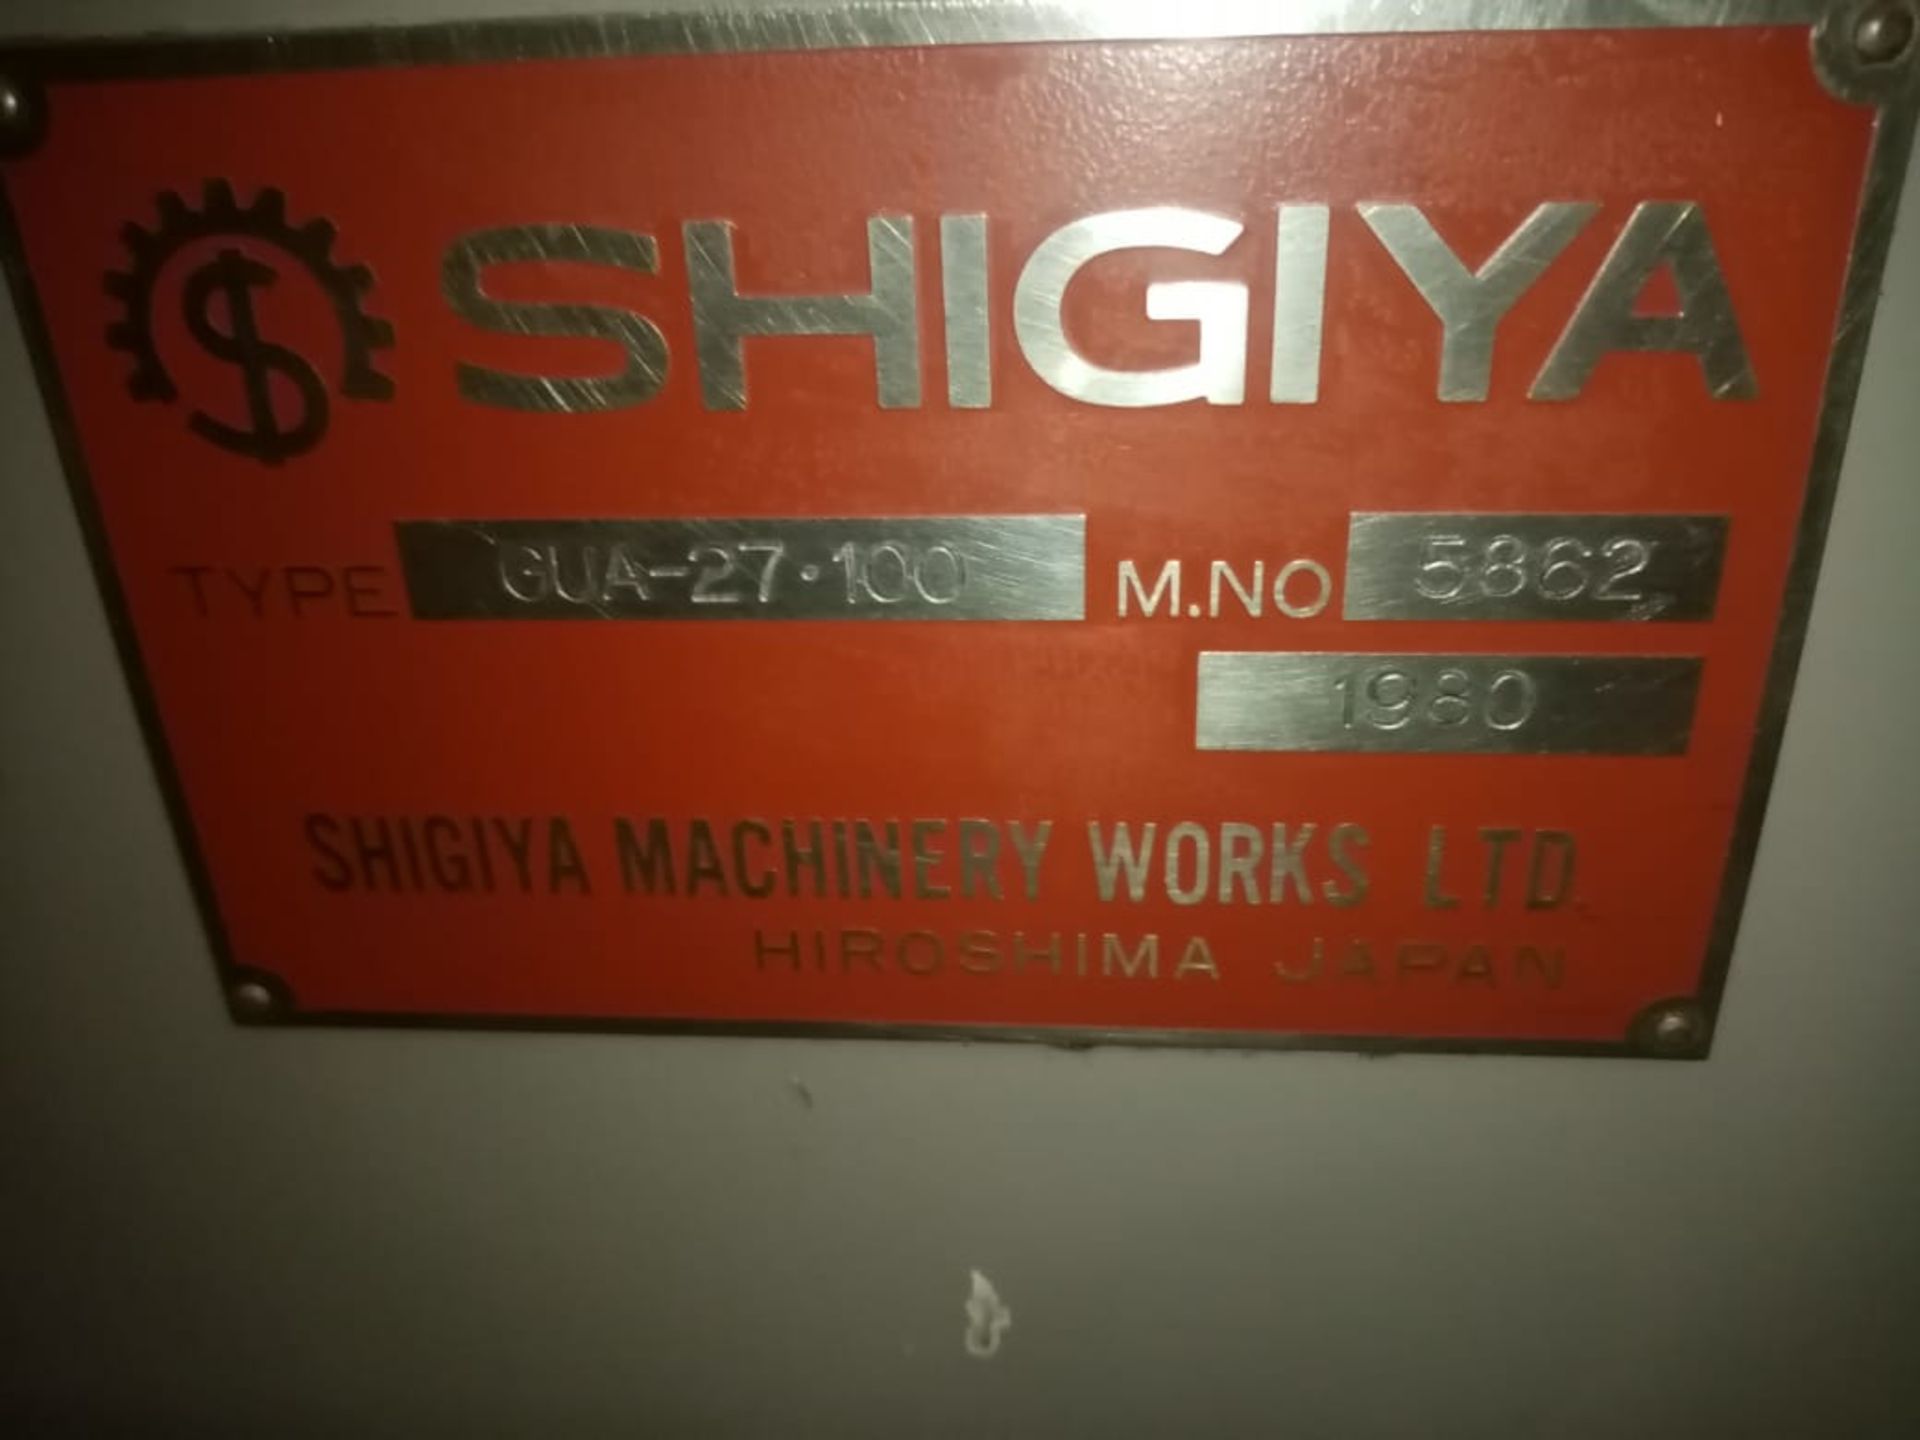 SHIGIYA Grinder Machine S/N GUA - 27 - 100 39" entre centros/ Rectificadora Cilindrica